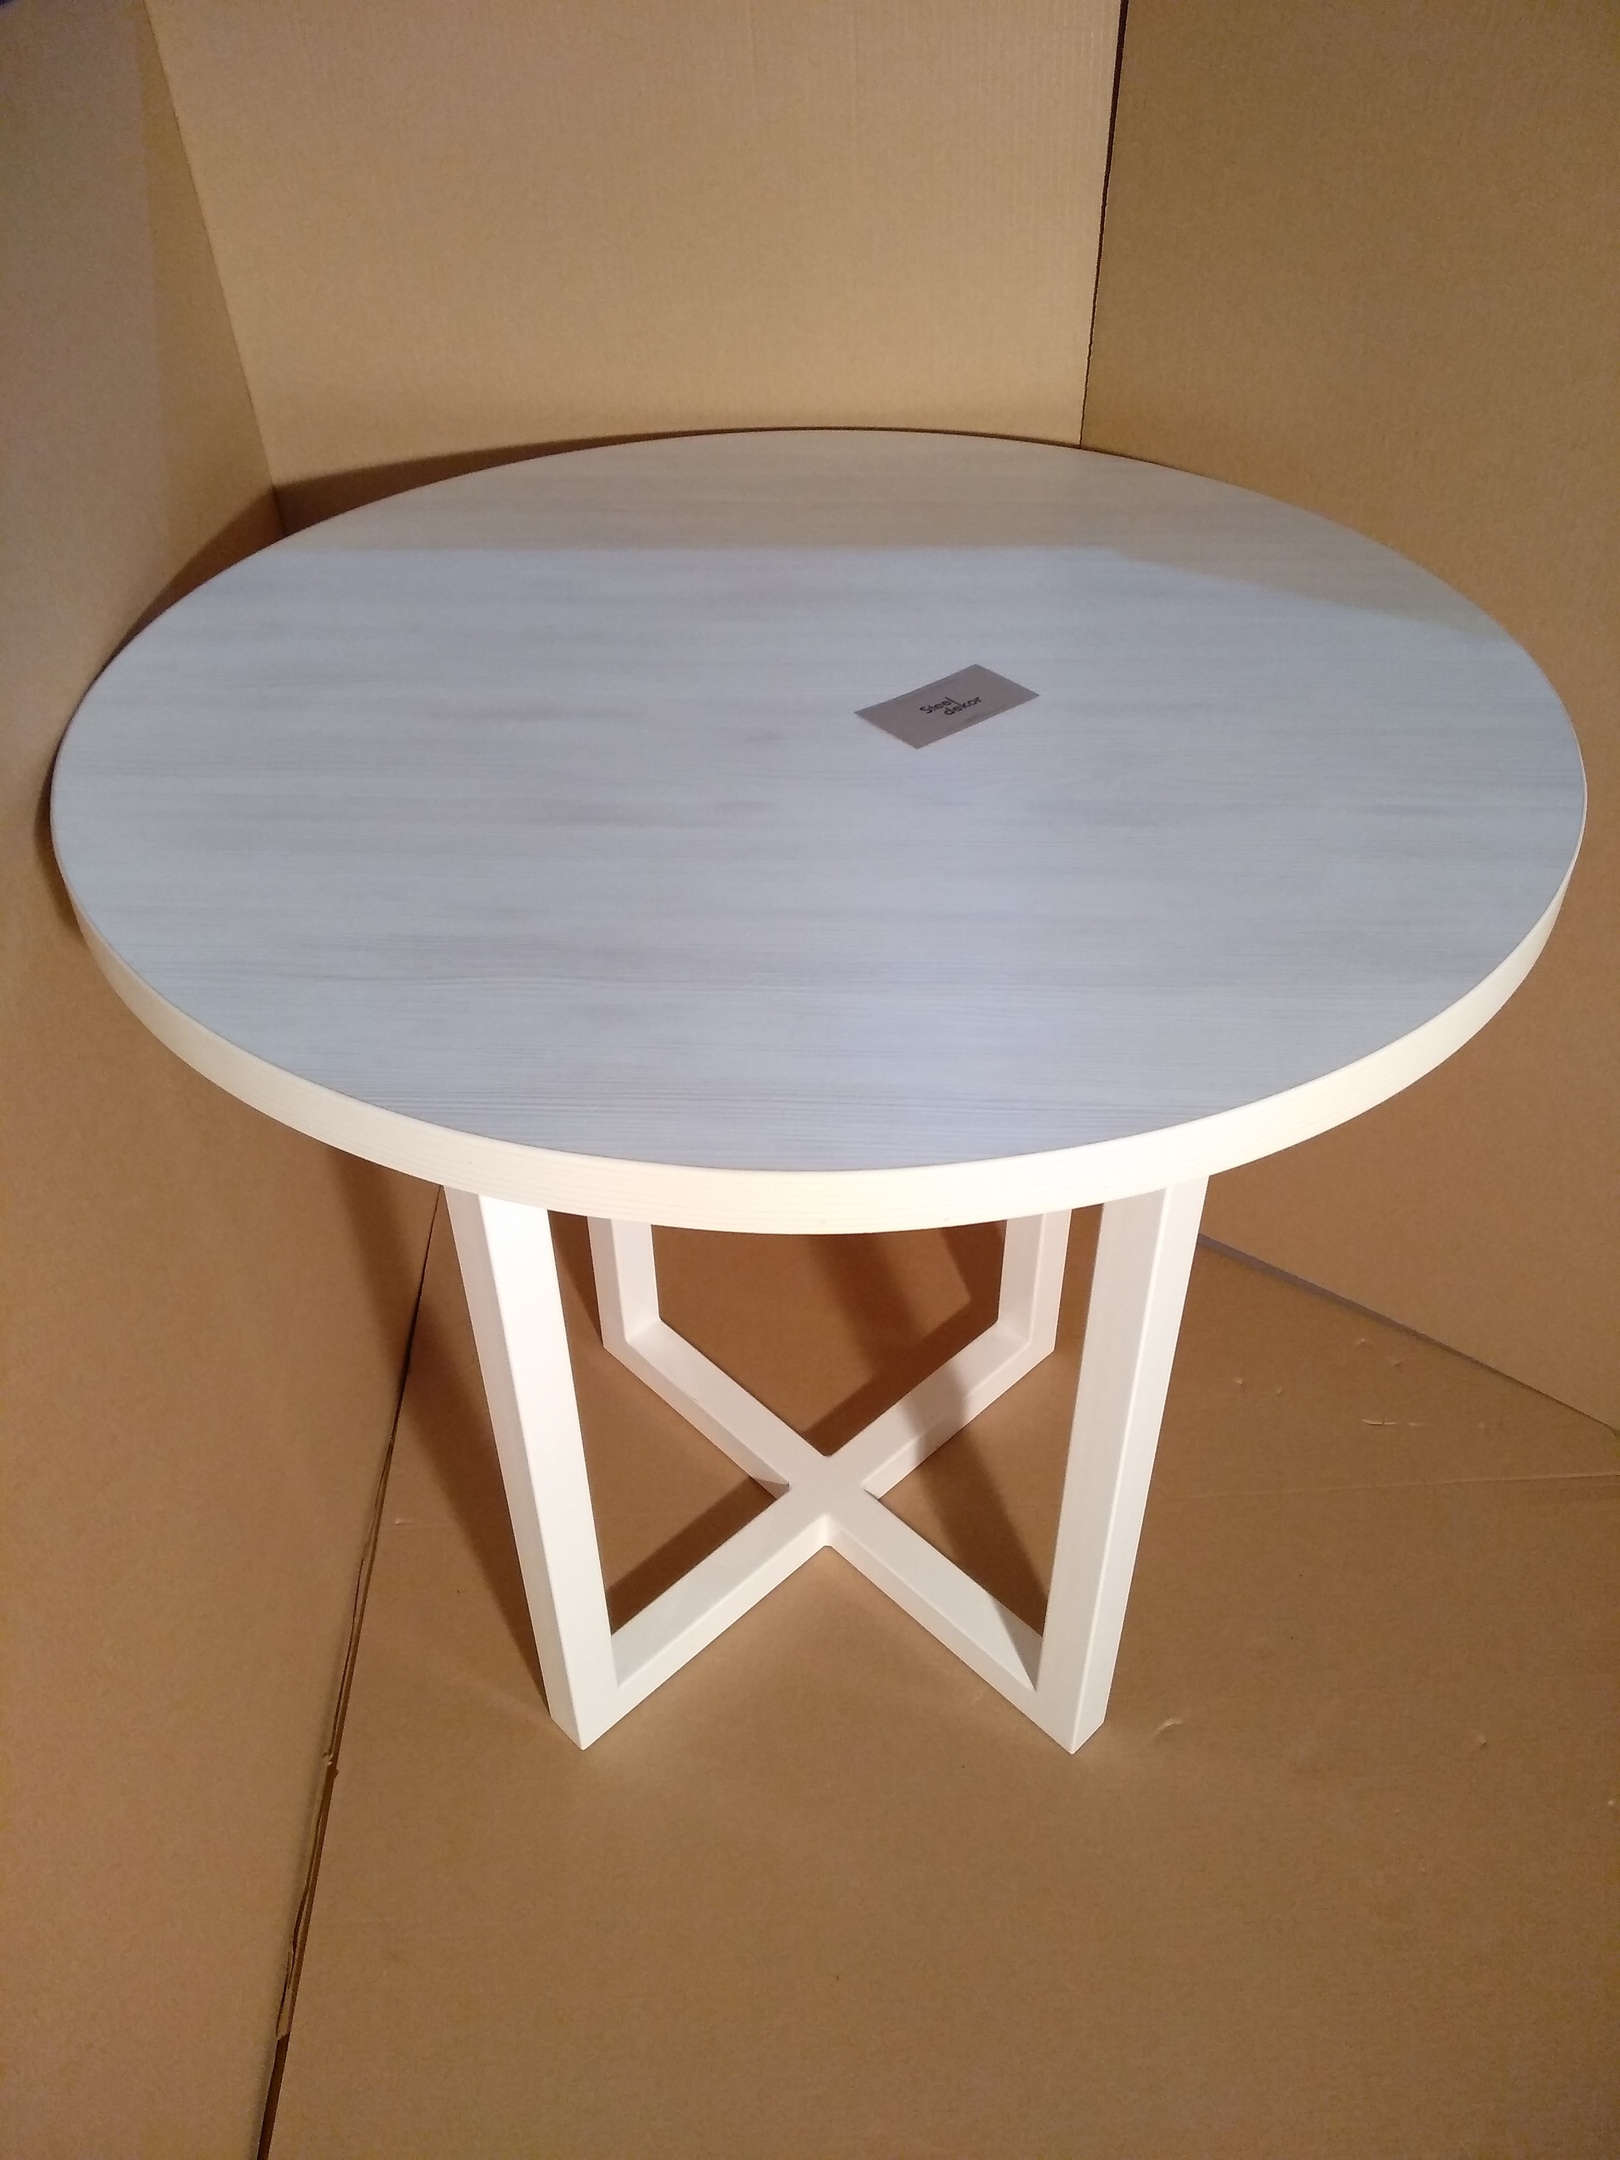 Столик из дерева круглый. Стол Lakri Round Table. Круглый стол ФАСТБОКС раздвижной. Столик круглый. Круглый деревянный столик.